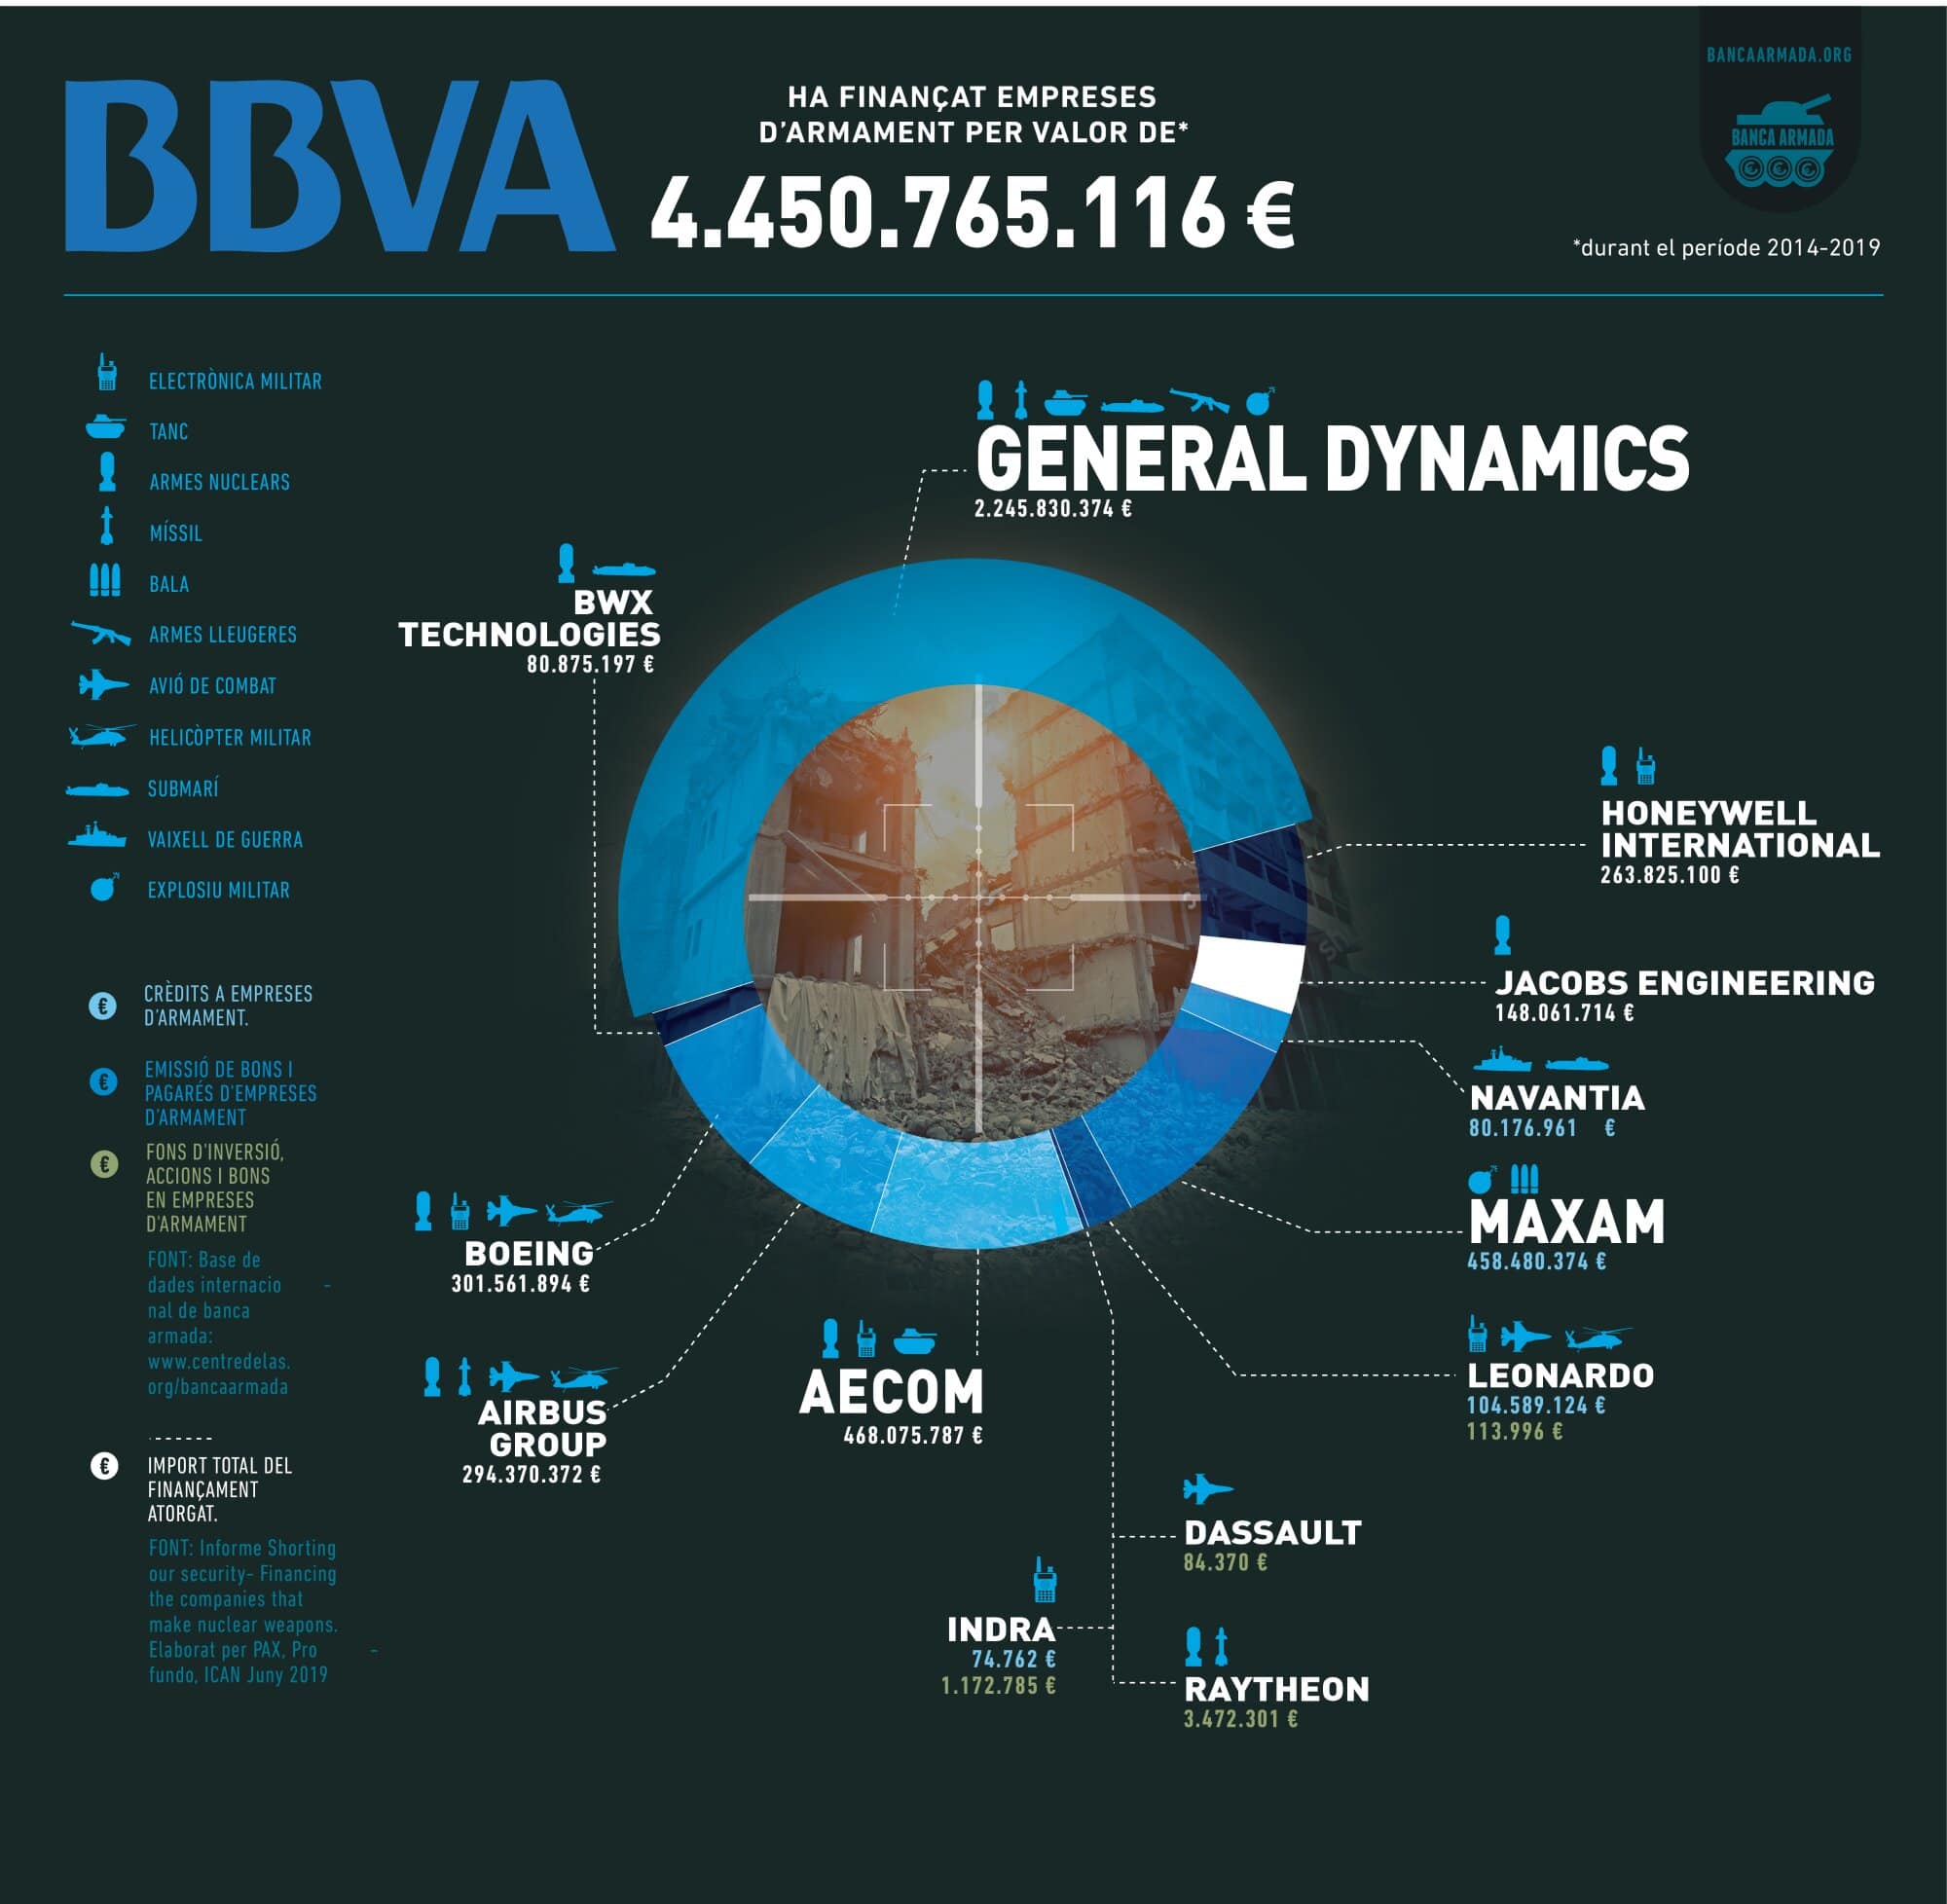 Infografia “BBVA: finançament a empreses d’armament 2014-2019”